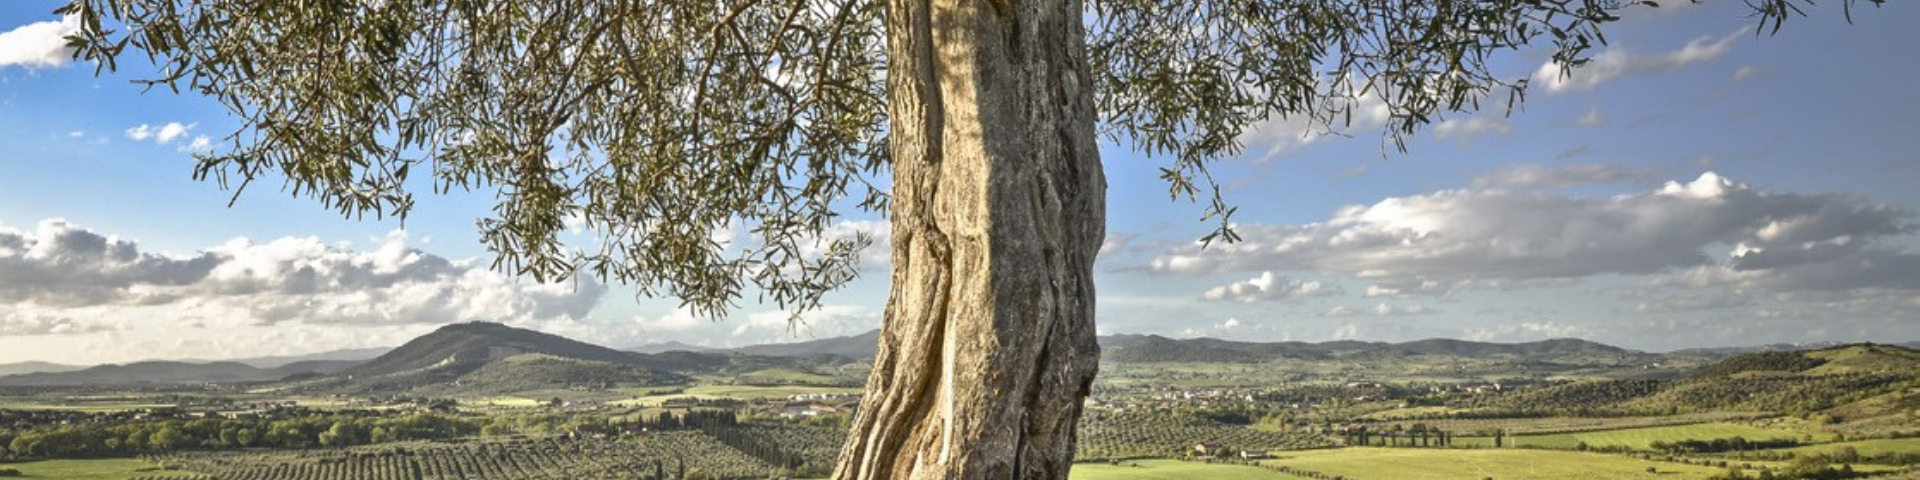 Albero di olivo con panorama